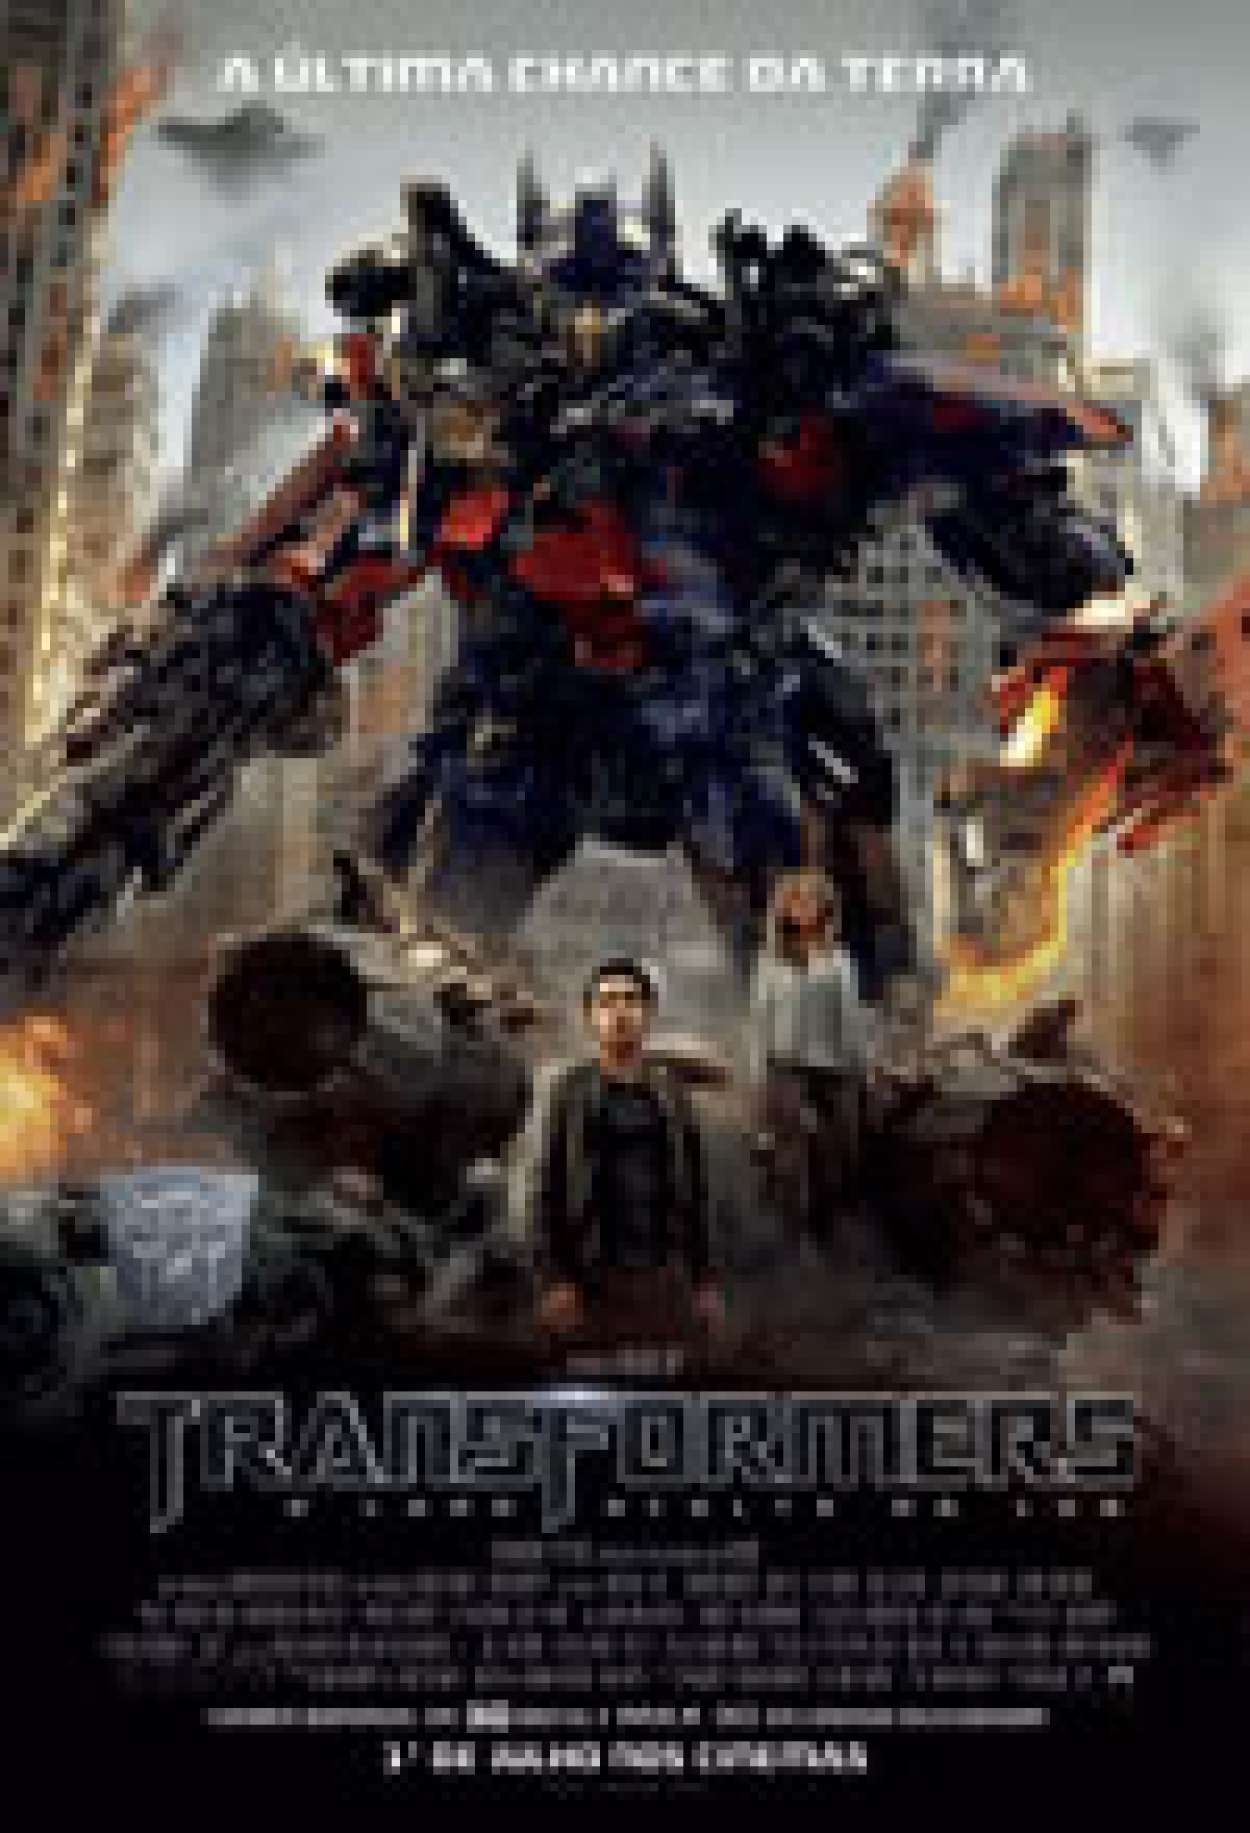 Transformers 7: Trailer épico tem guerra contra monstros e feras